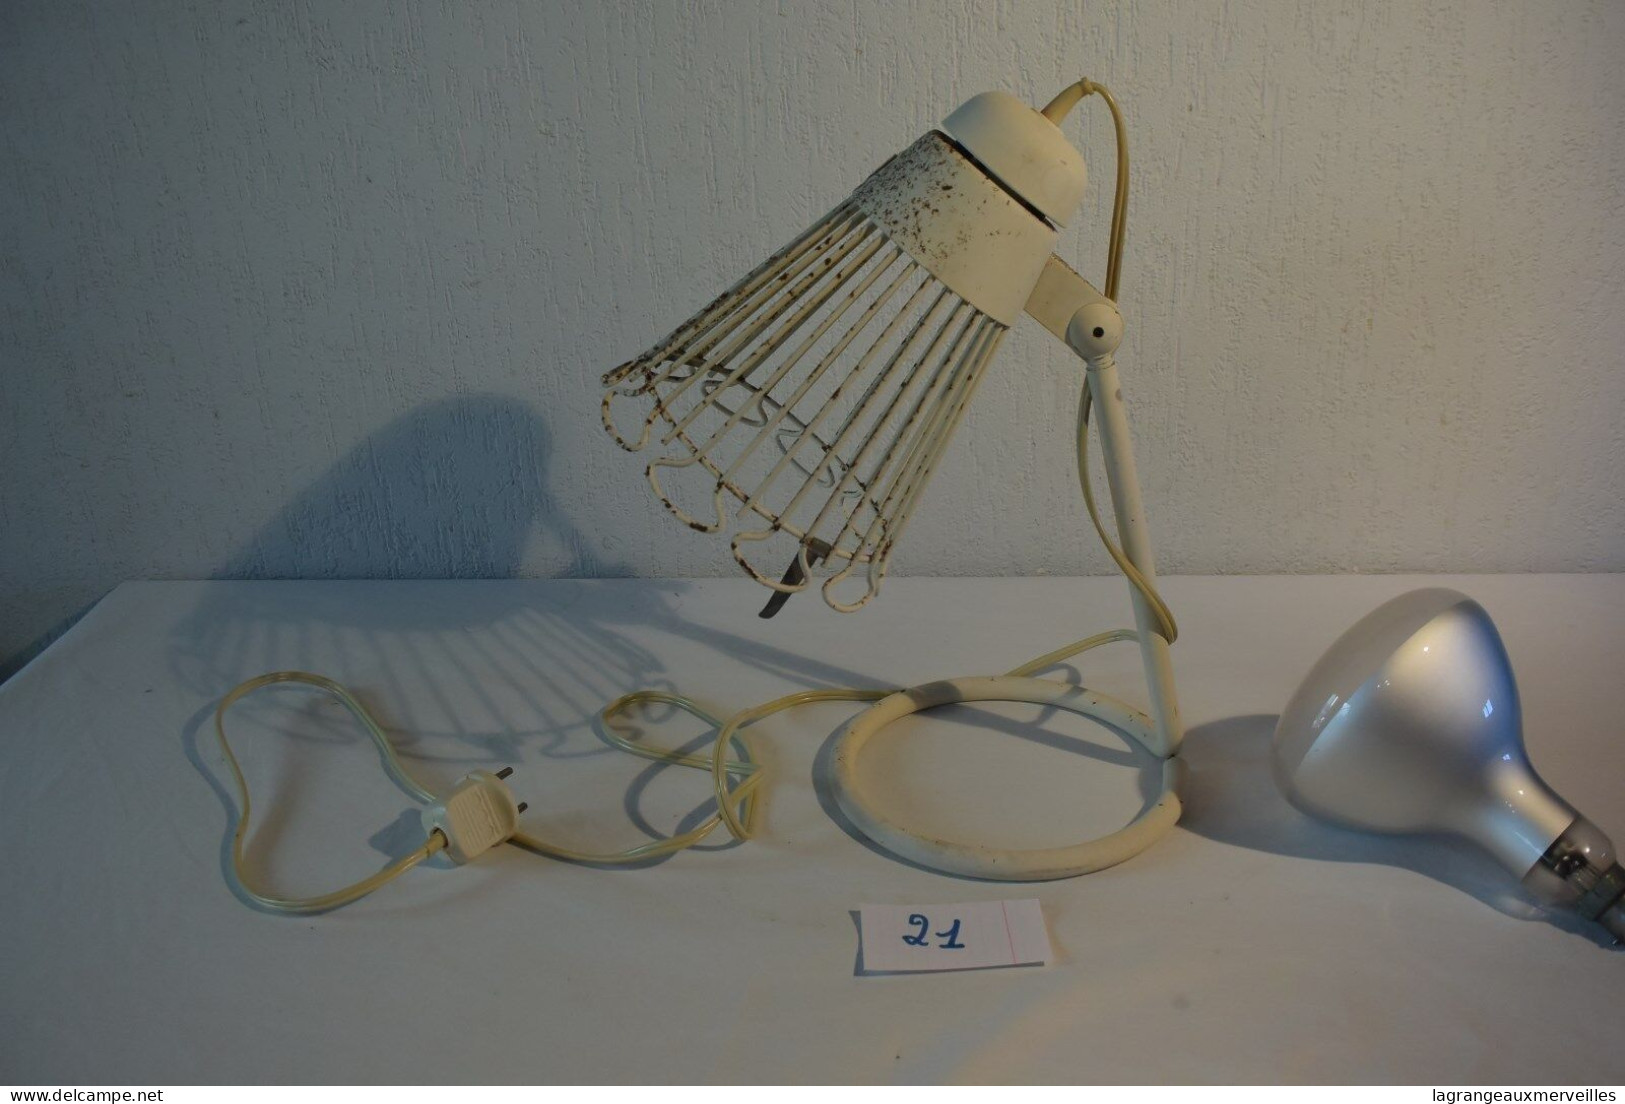 C21 Authentique lampe Philips design art deco 60